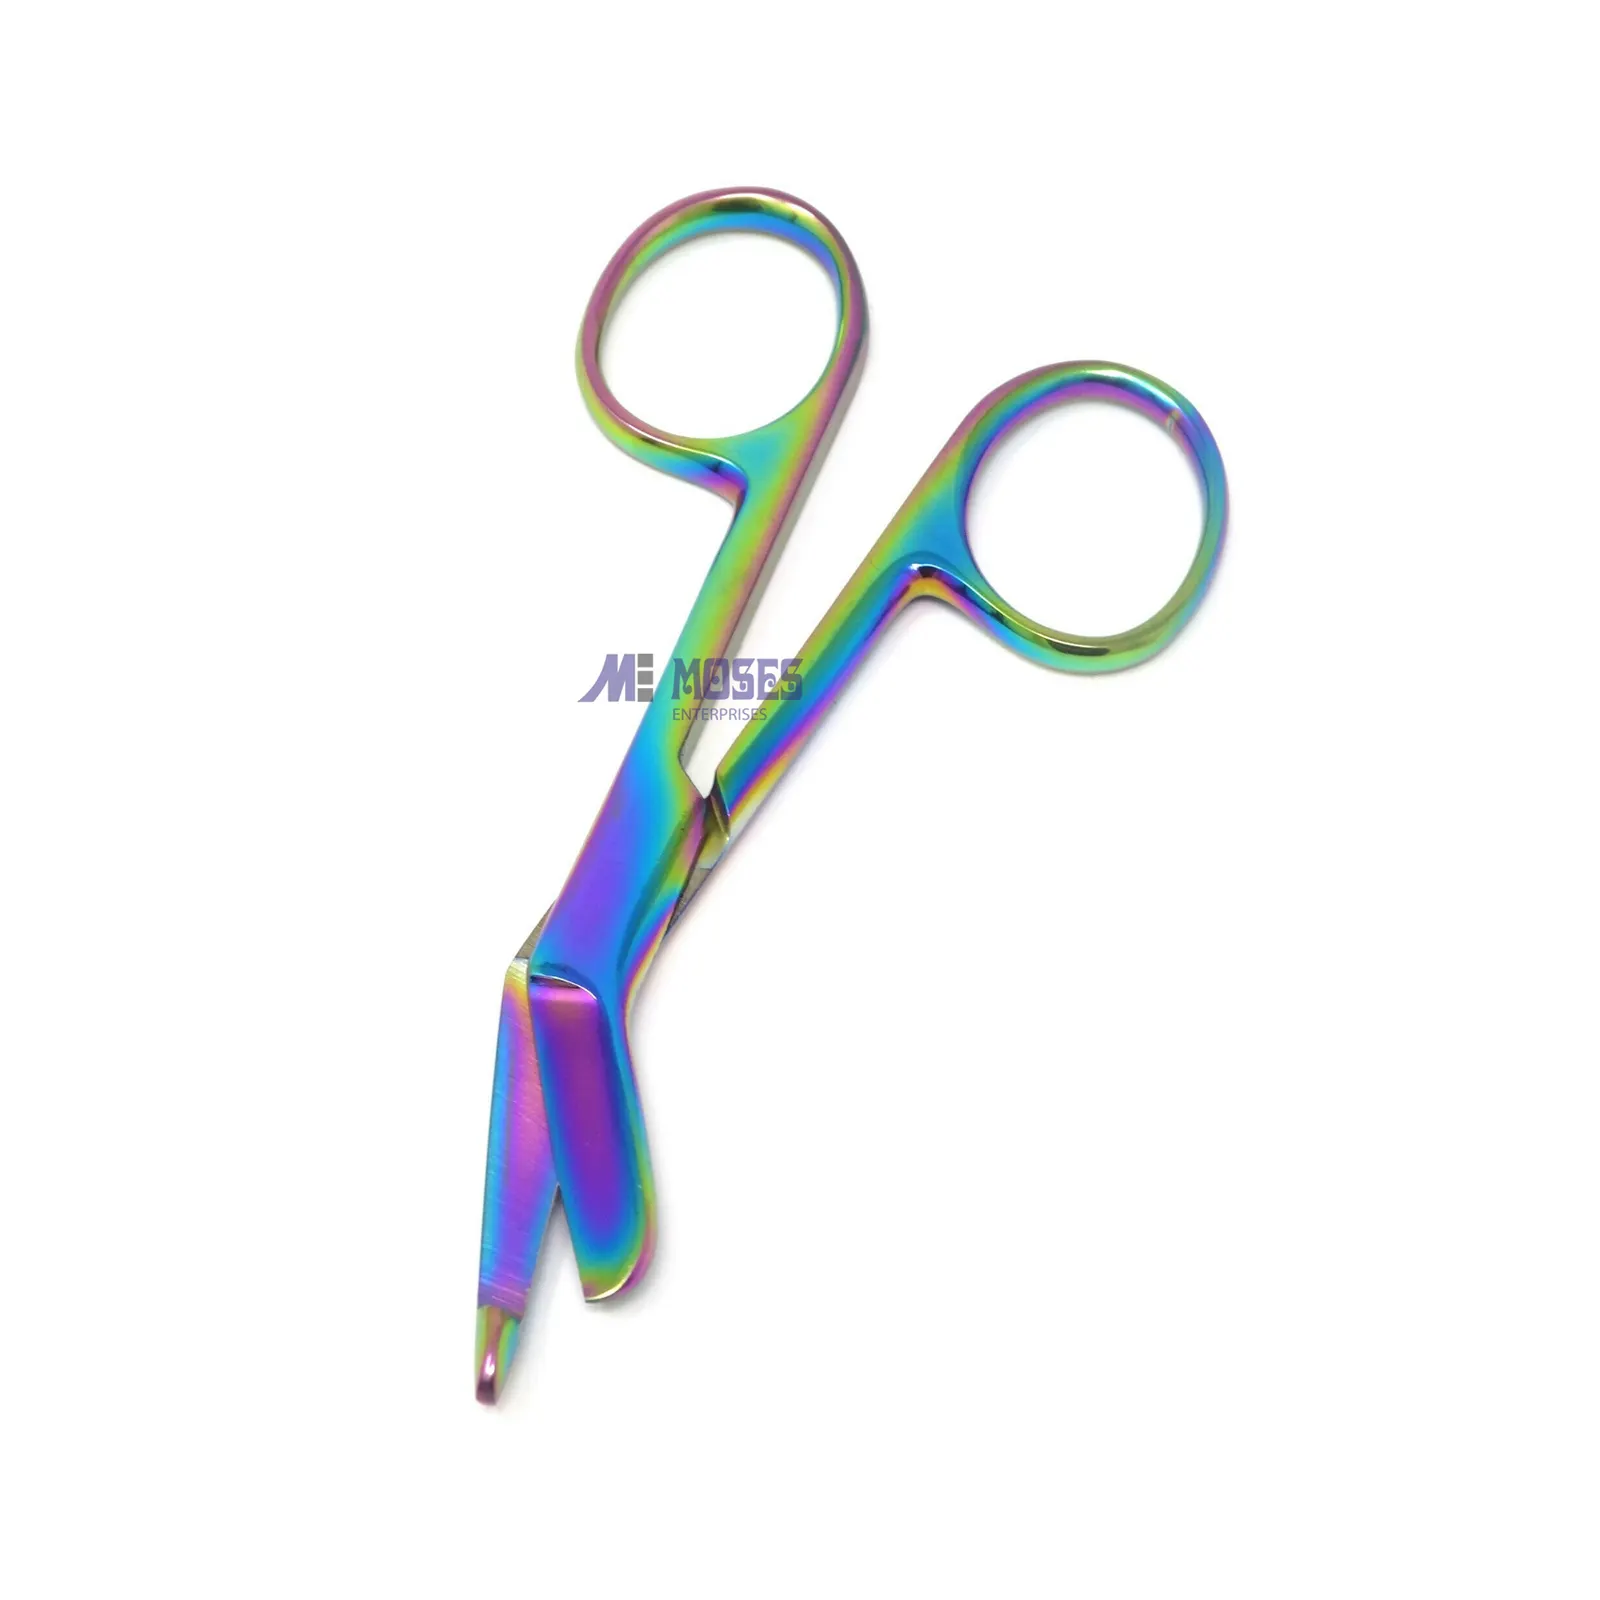 Aço inoxidável Medical High Grade Qualidade Lister Bandage Scissors 3.5 "Multi Color Rainbow Shear